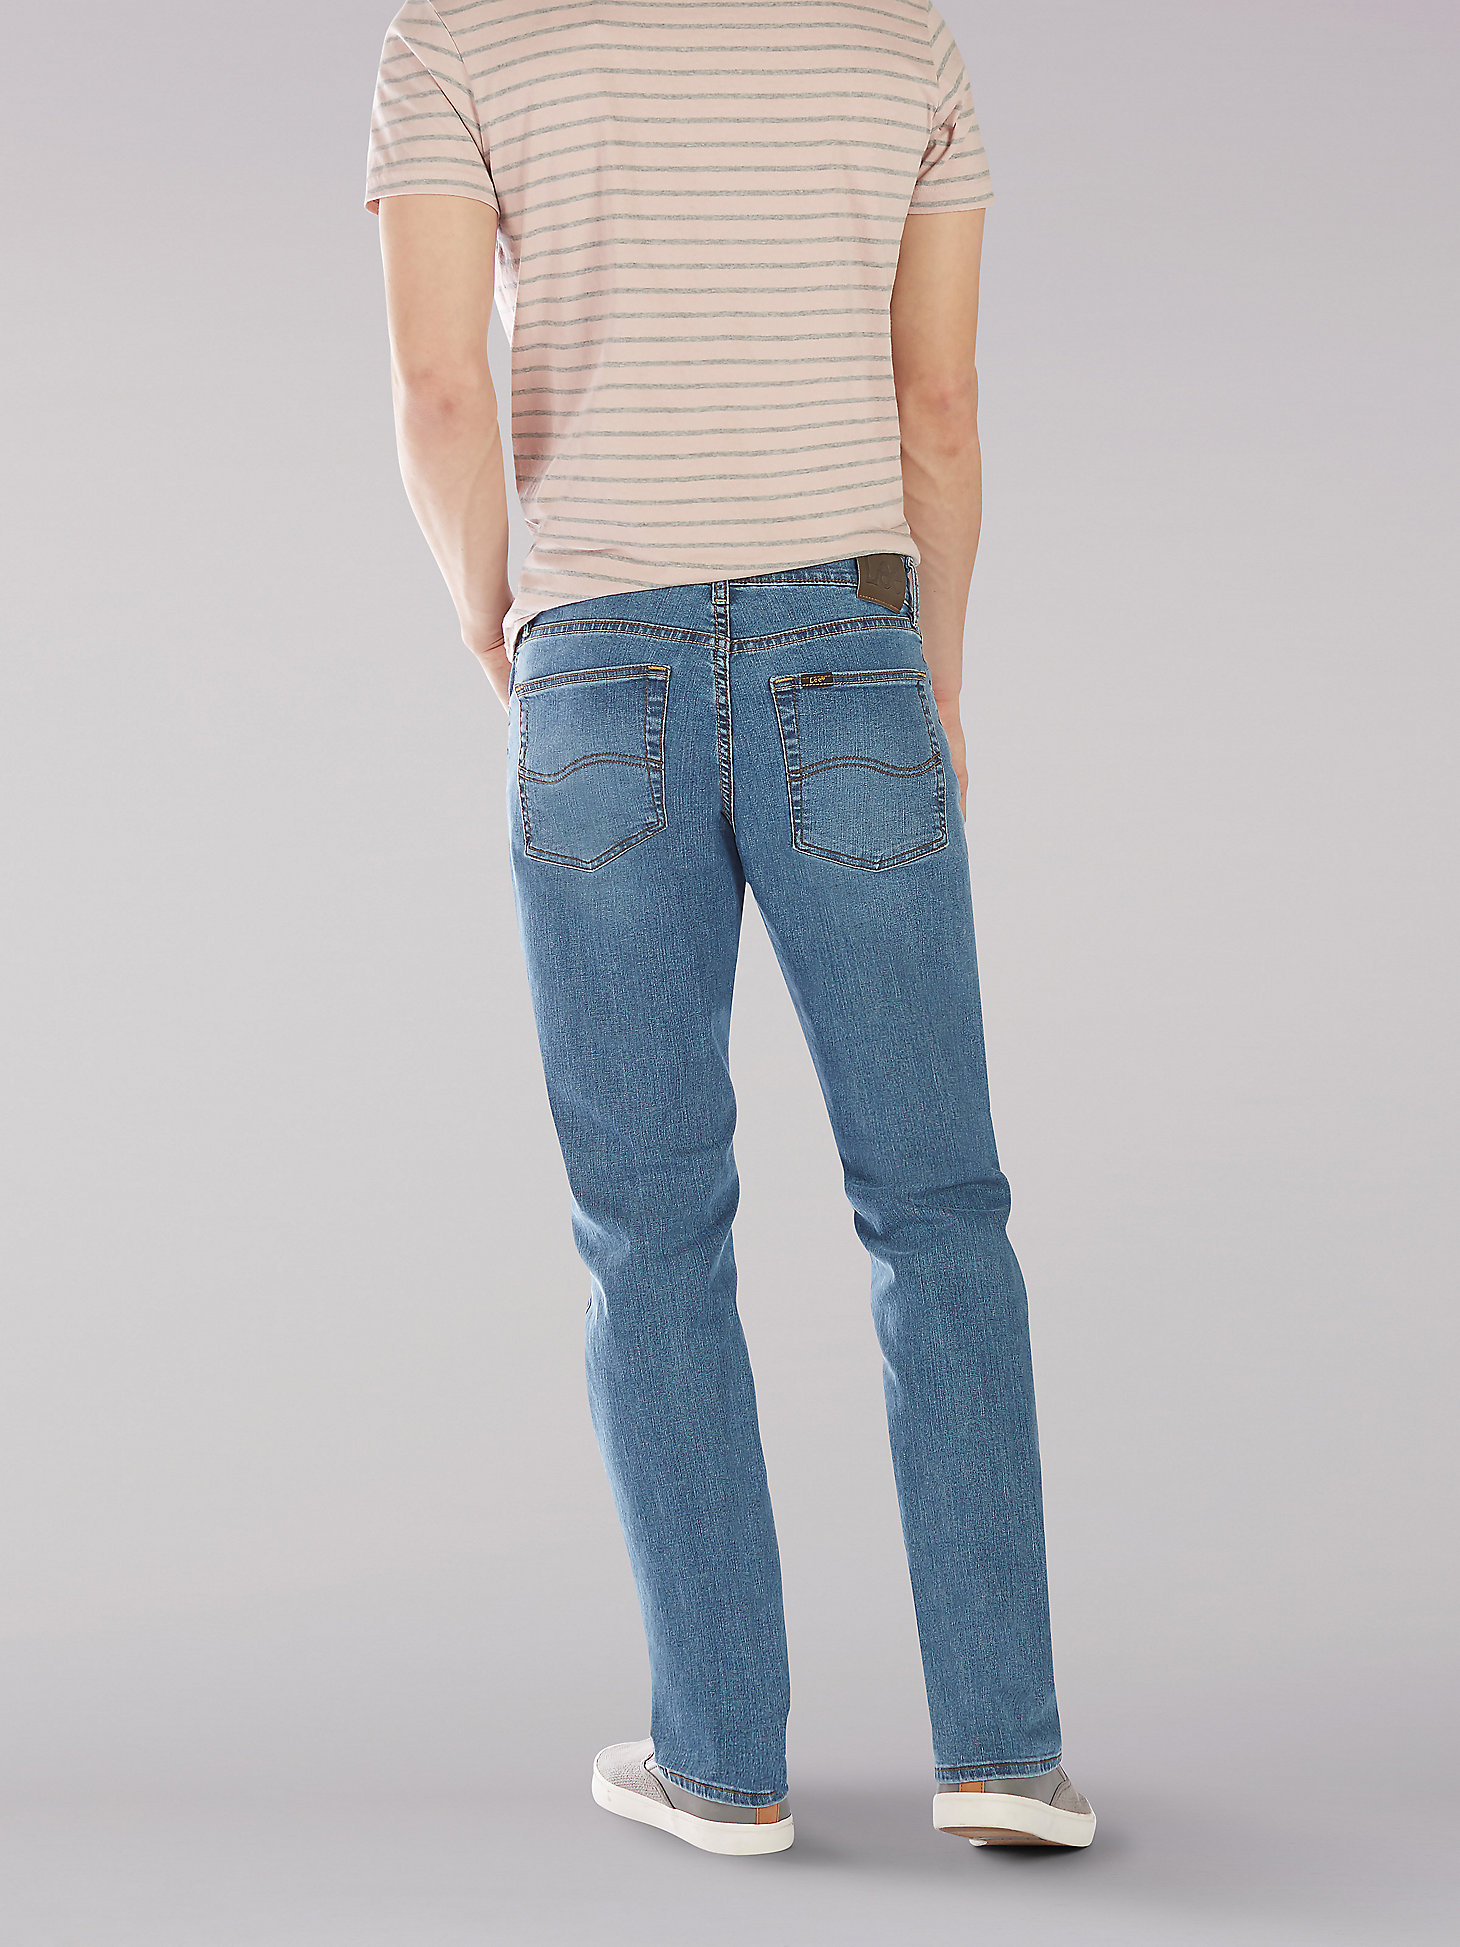 Men’s Premium Flex Classic Fit Jeans in Rascal alternative view 1